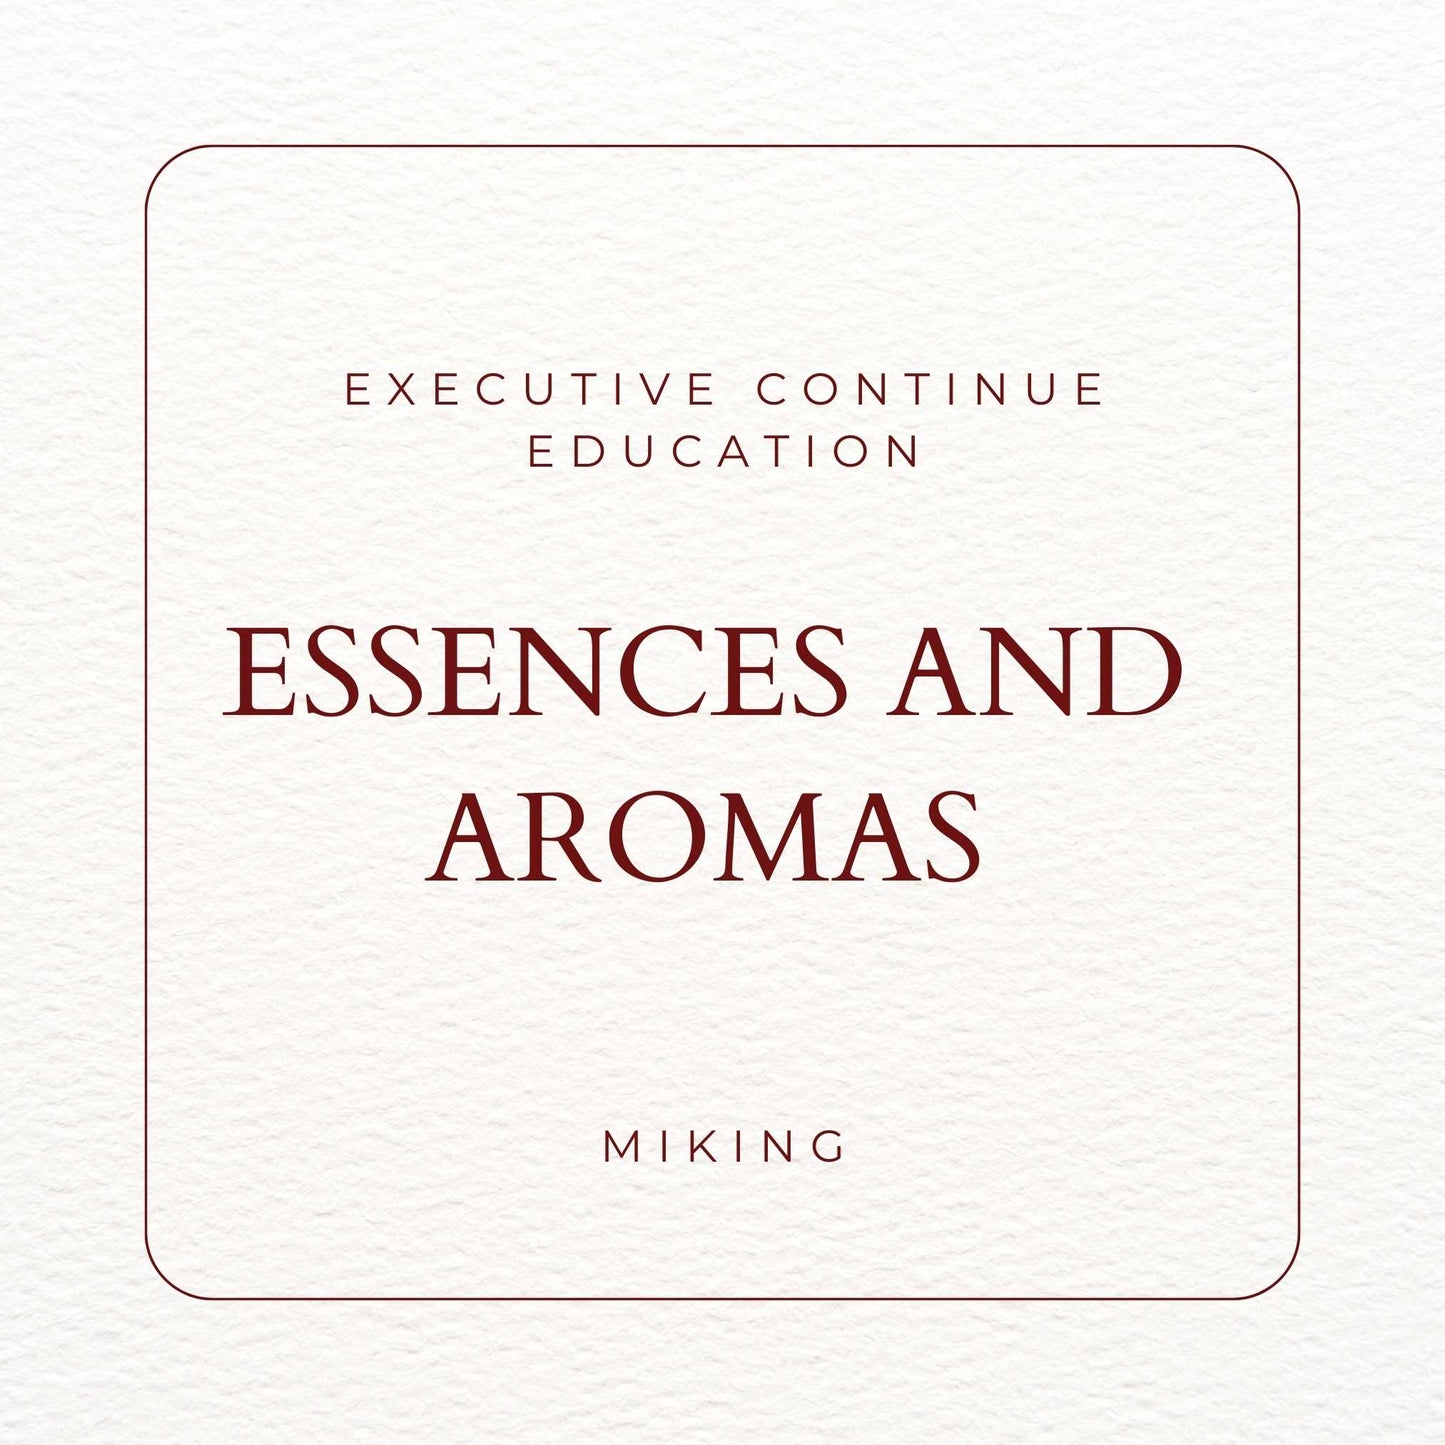 Executive Continue Education Essences and aromas